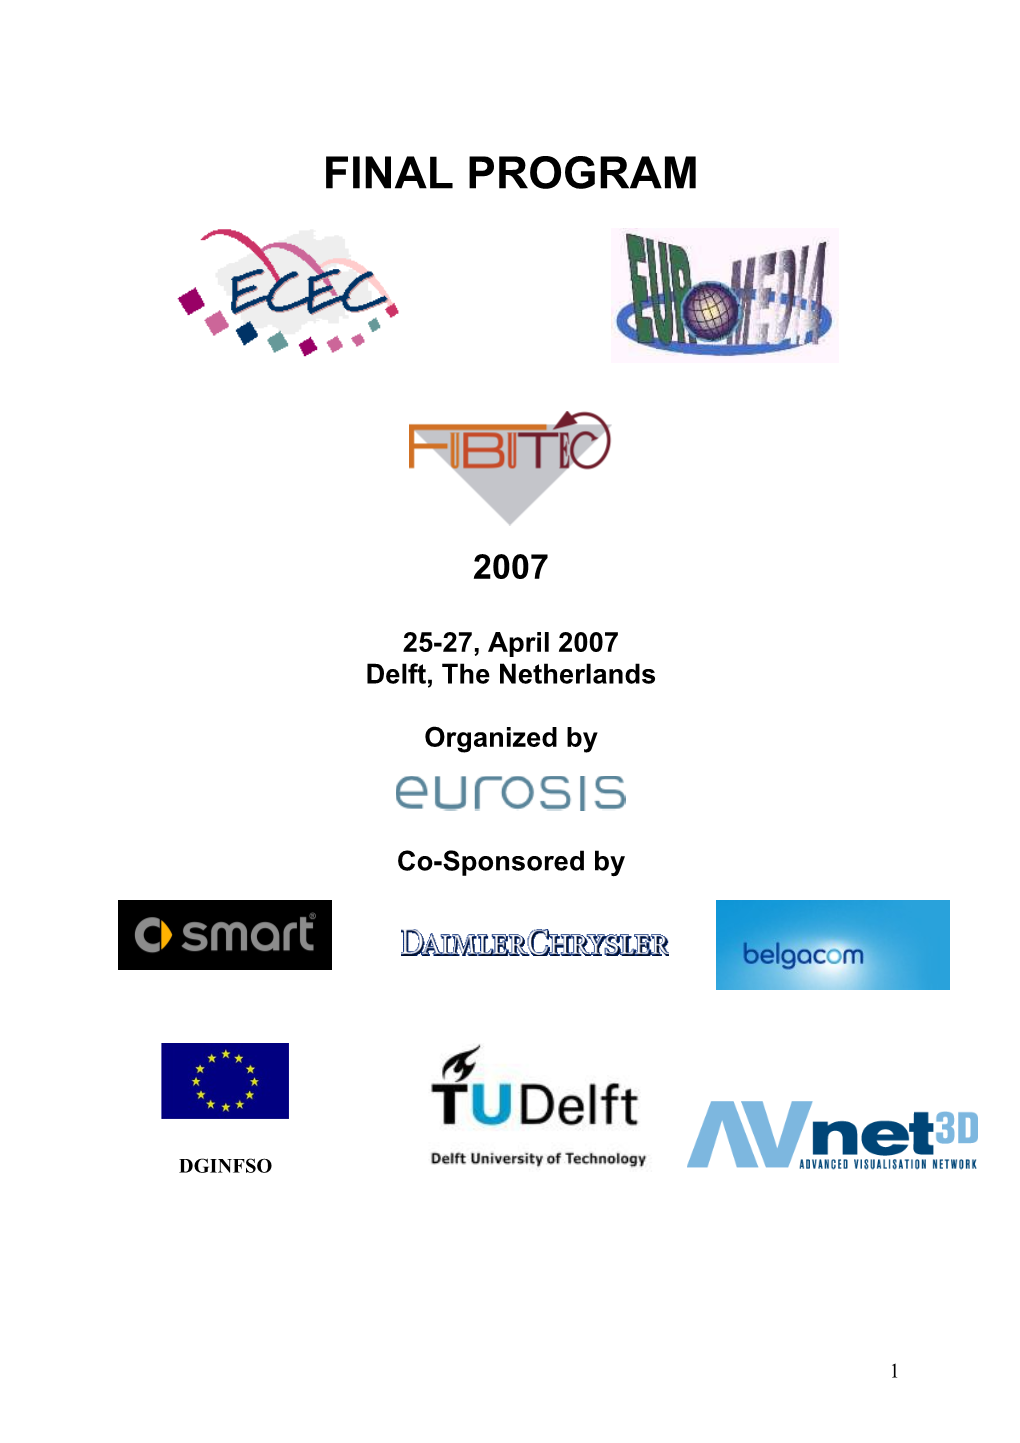 ECEC-FUBUTEC-EUROMEDIA2007 Final Programme